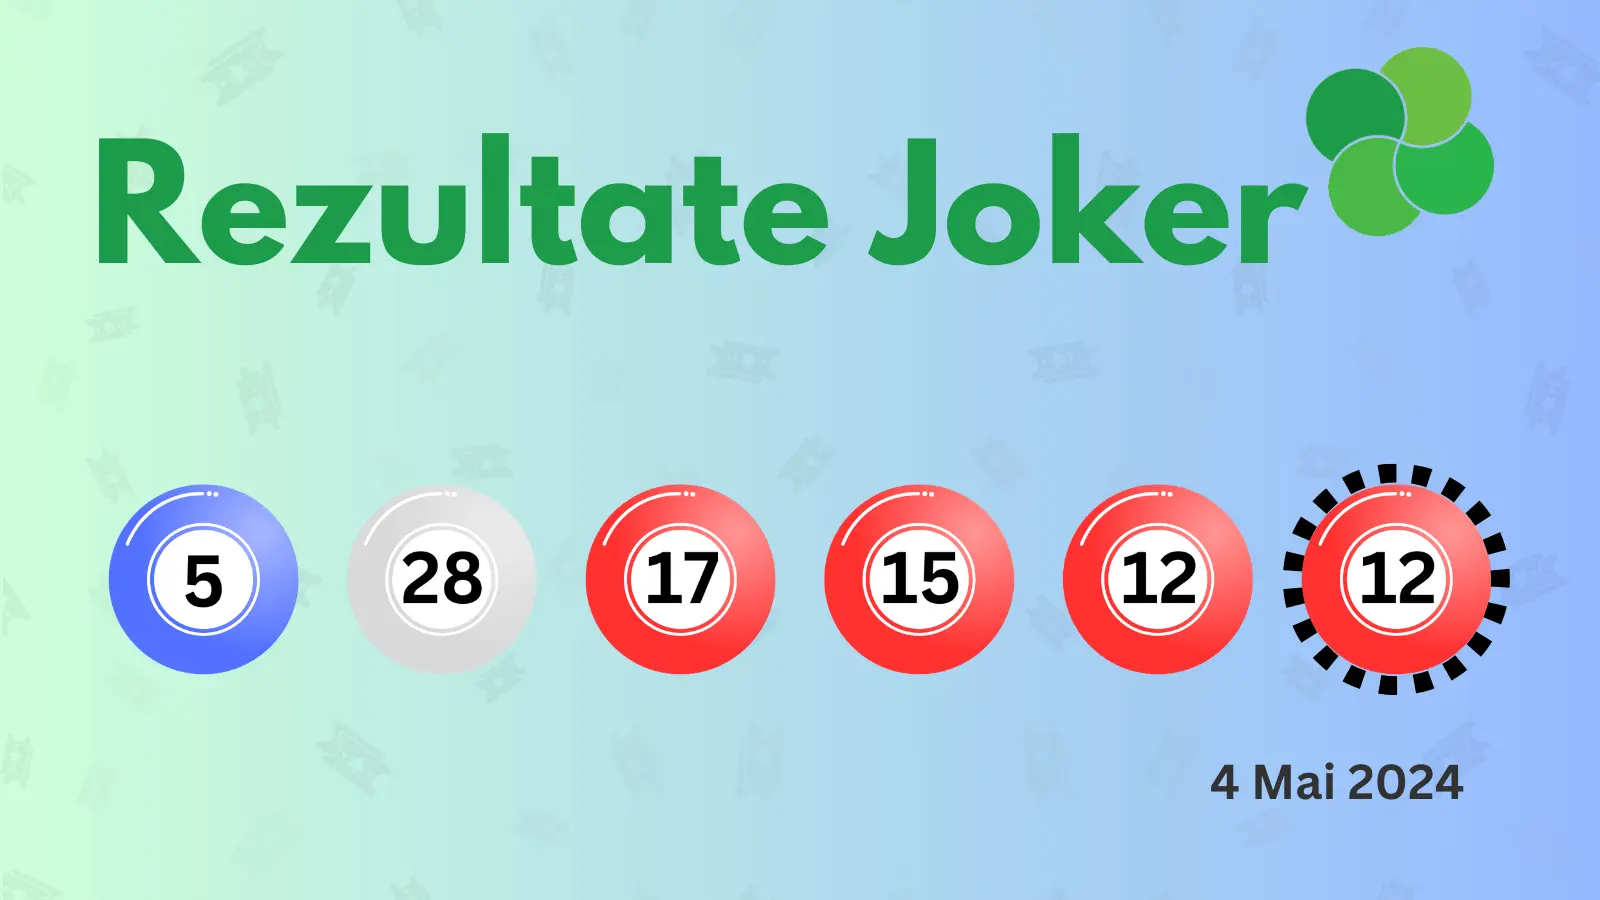 Rezultate Joker sâmbătă 04.05.2024 Numerele câștigătoare la tragerea suplimentară